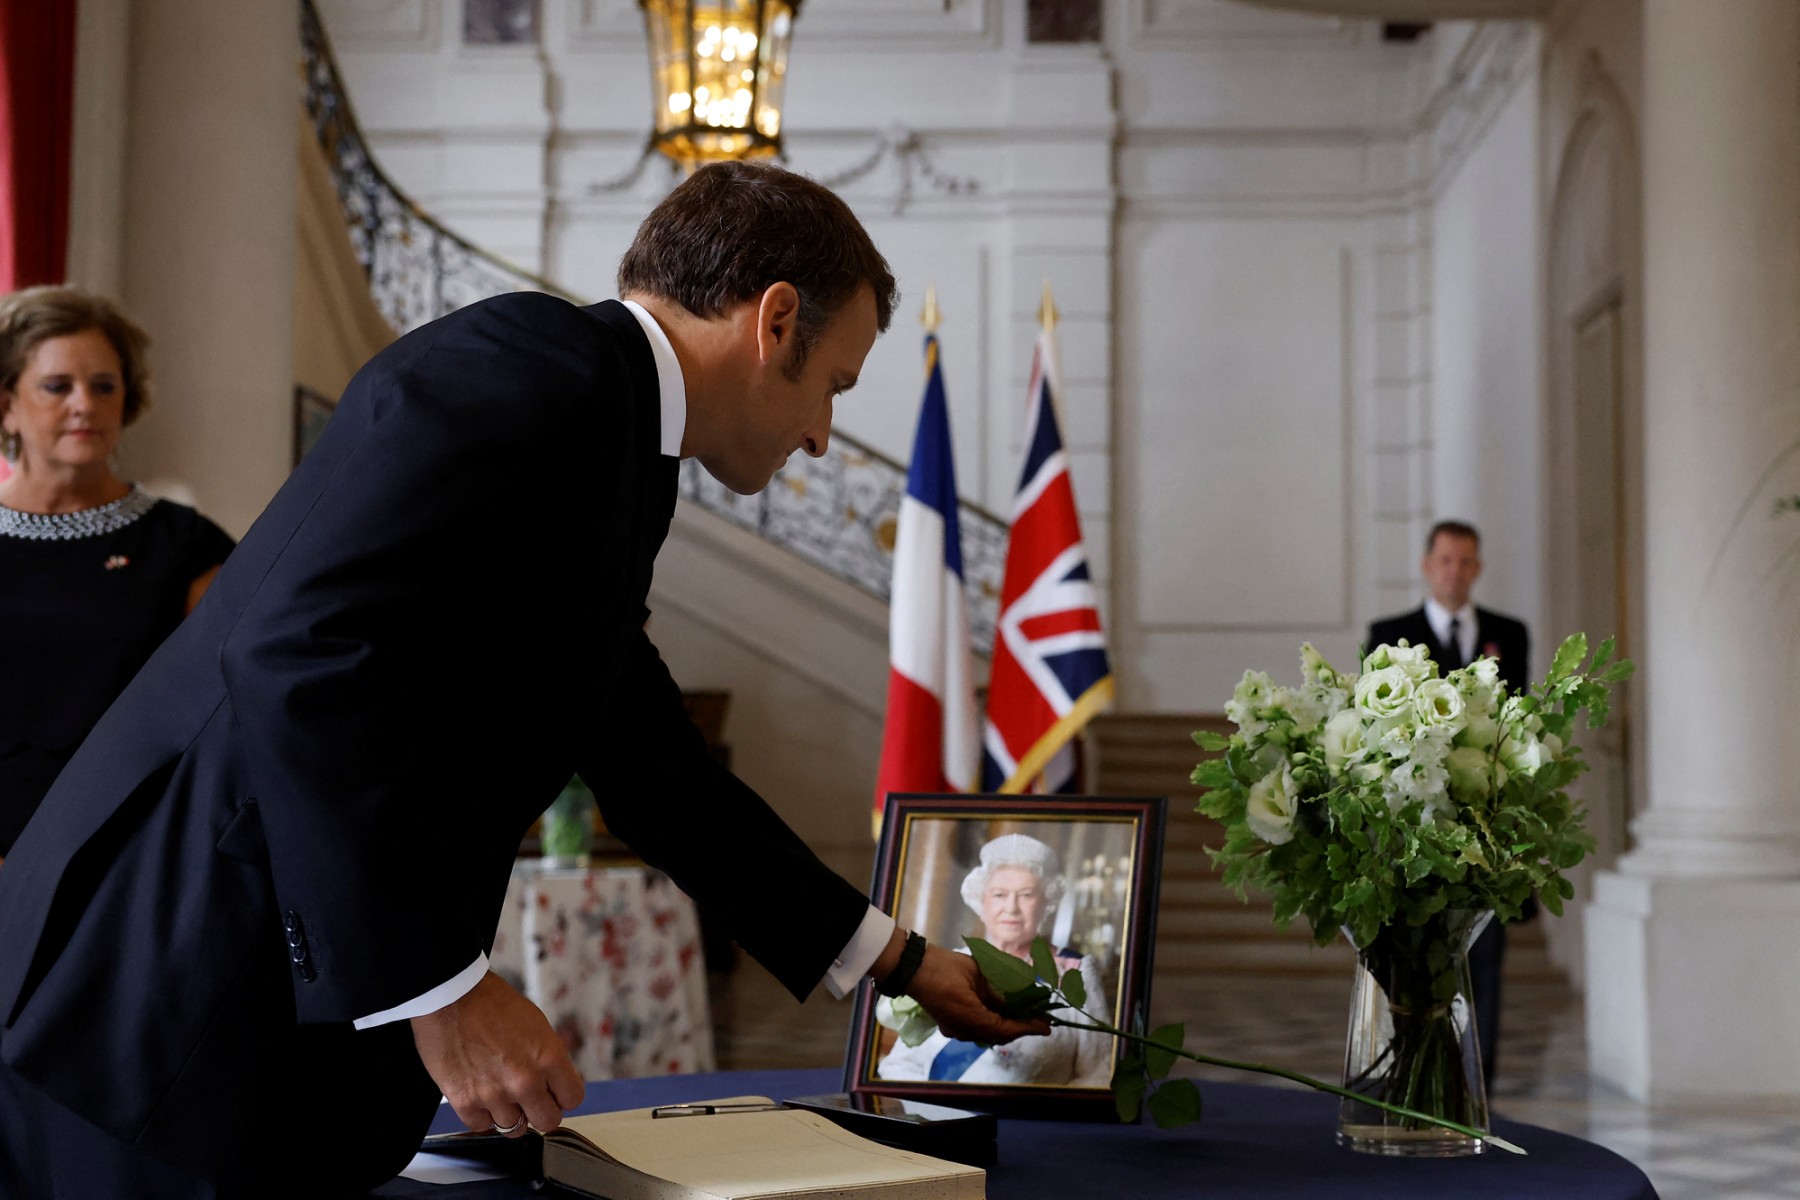 Le président français Emmanuel Macron place une rose blanche à côté d'un portrait de la reine Elizabeth II, après avoir signé le livre de condoléances à l'ambassade britannique à Paris, le 9 septembre 2022. (Photo : Christian Hartmann / Pool / AFP)